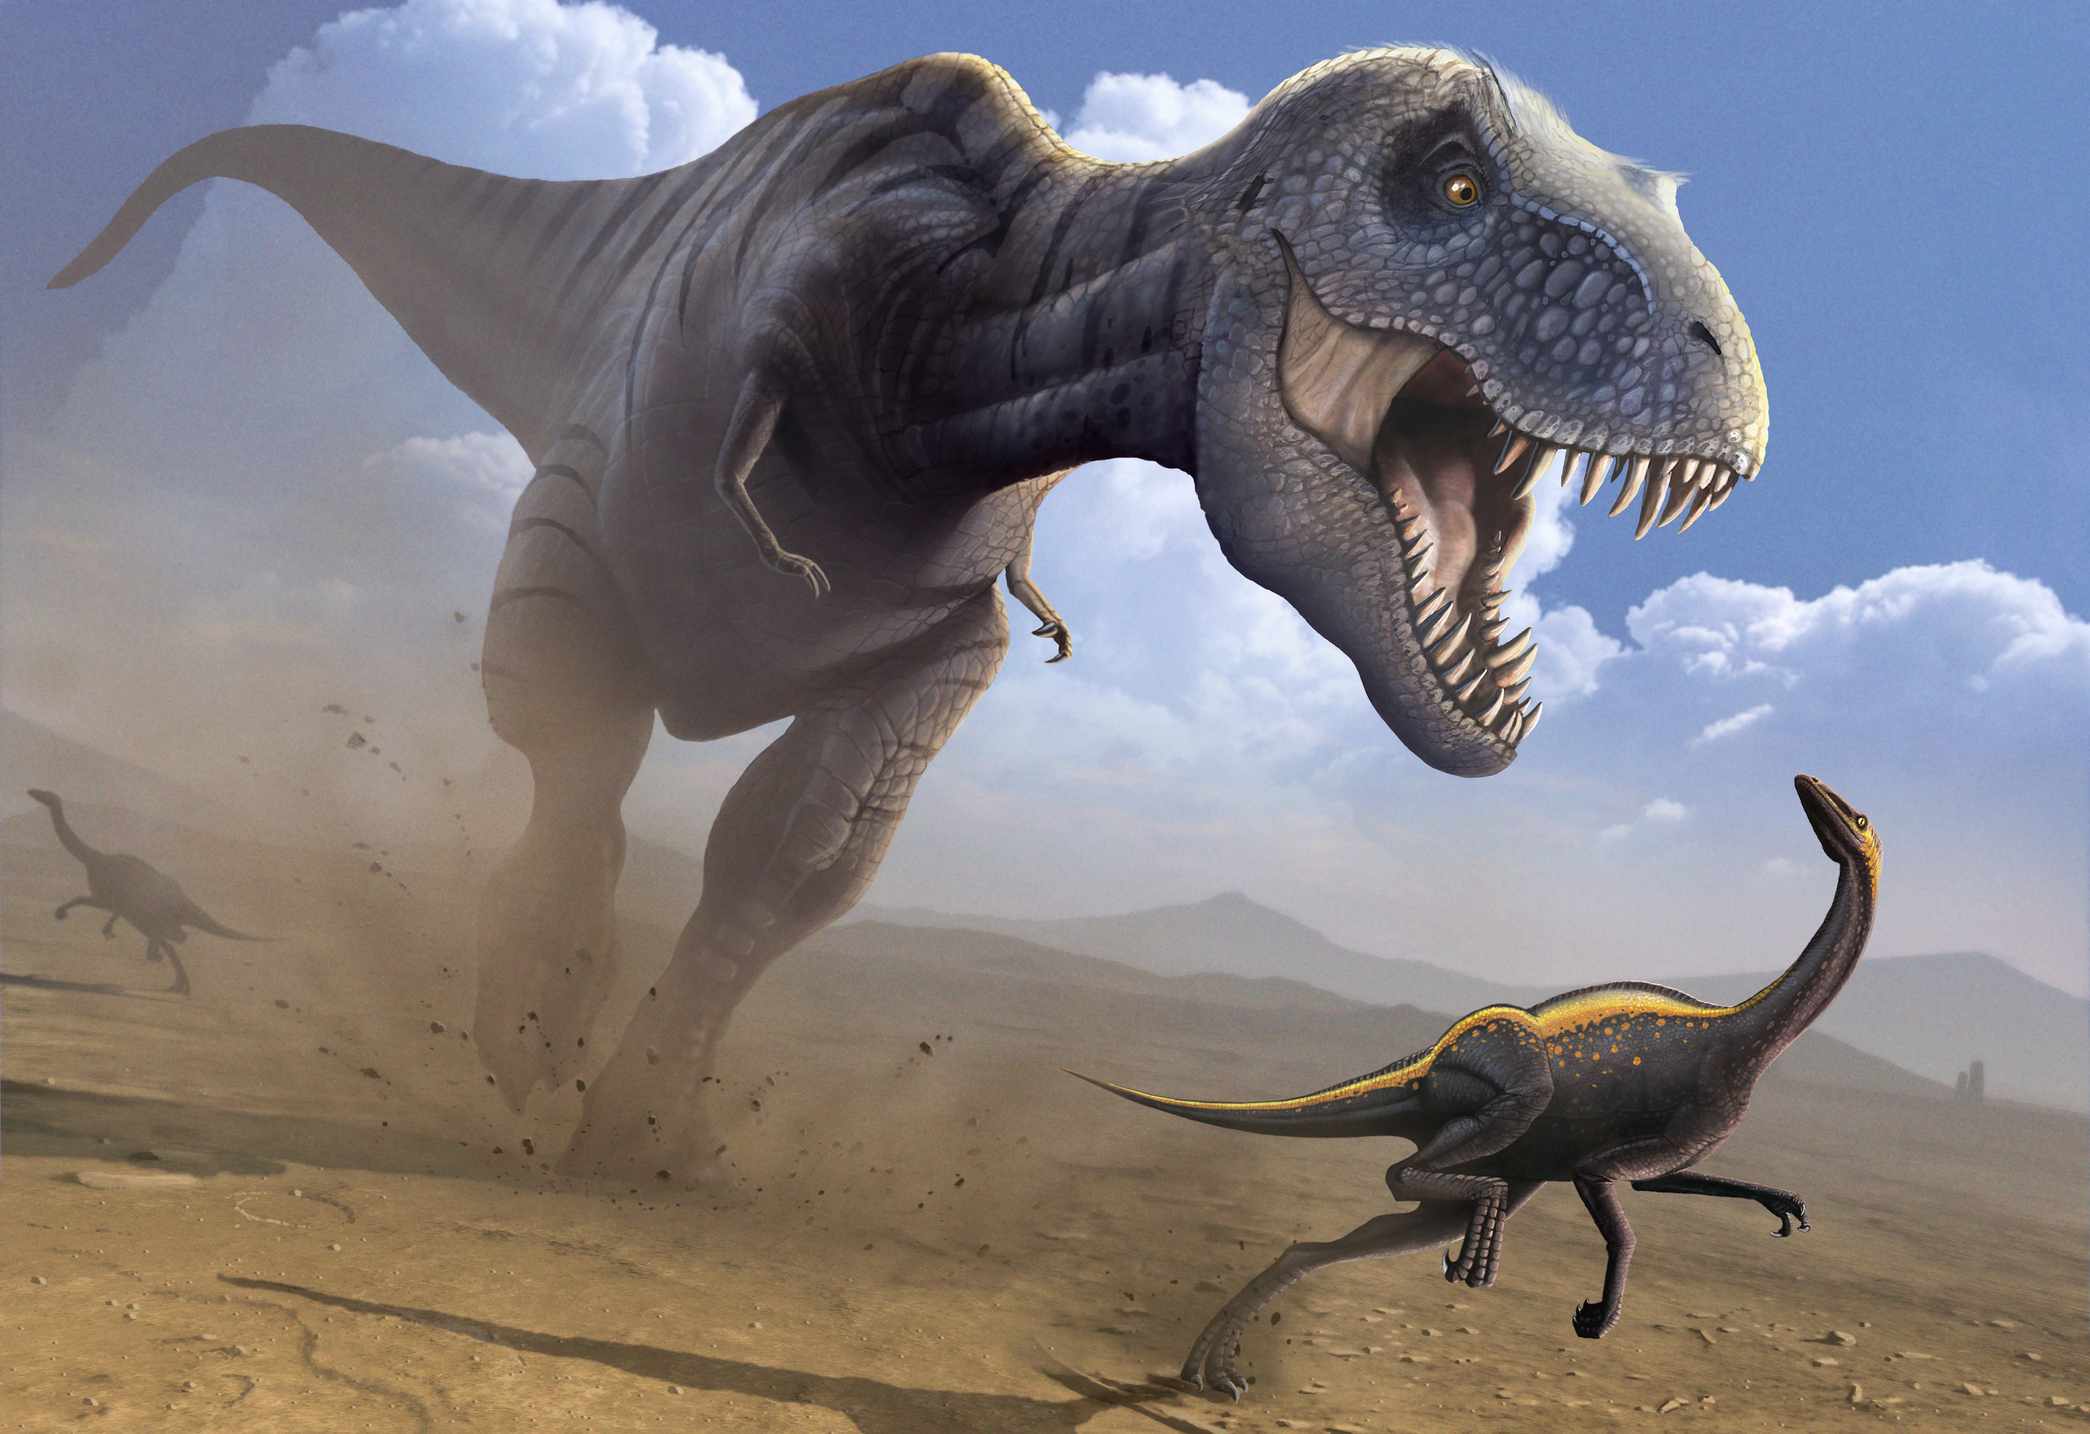 obra de arte de un tiranosaurio rex corriendo tras un dinosaurio más pequeño con la boca abierta